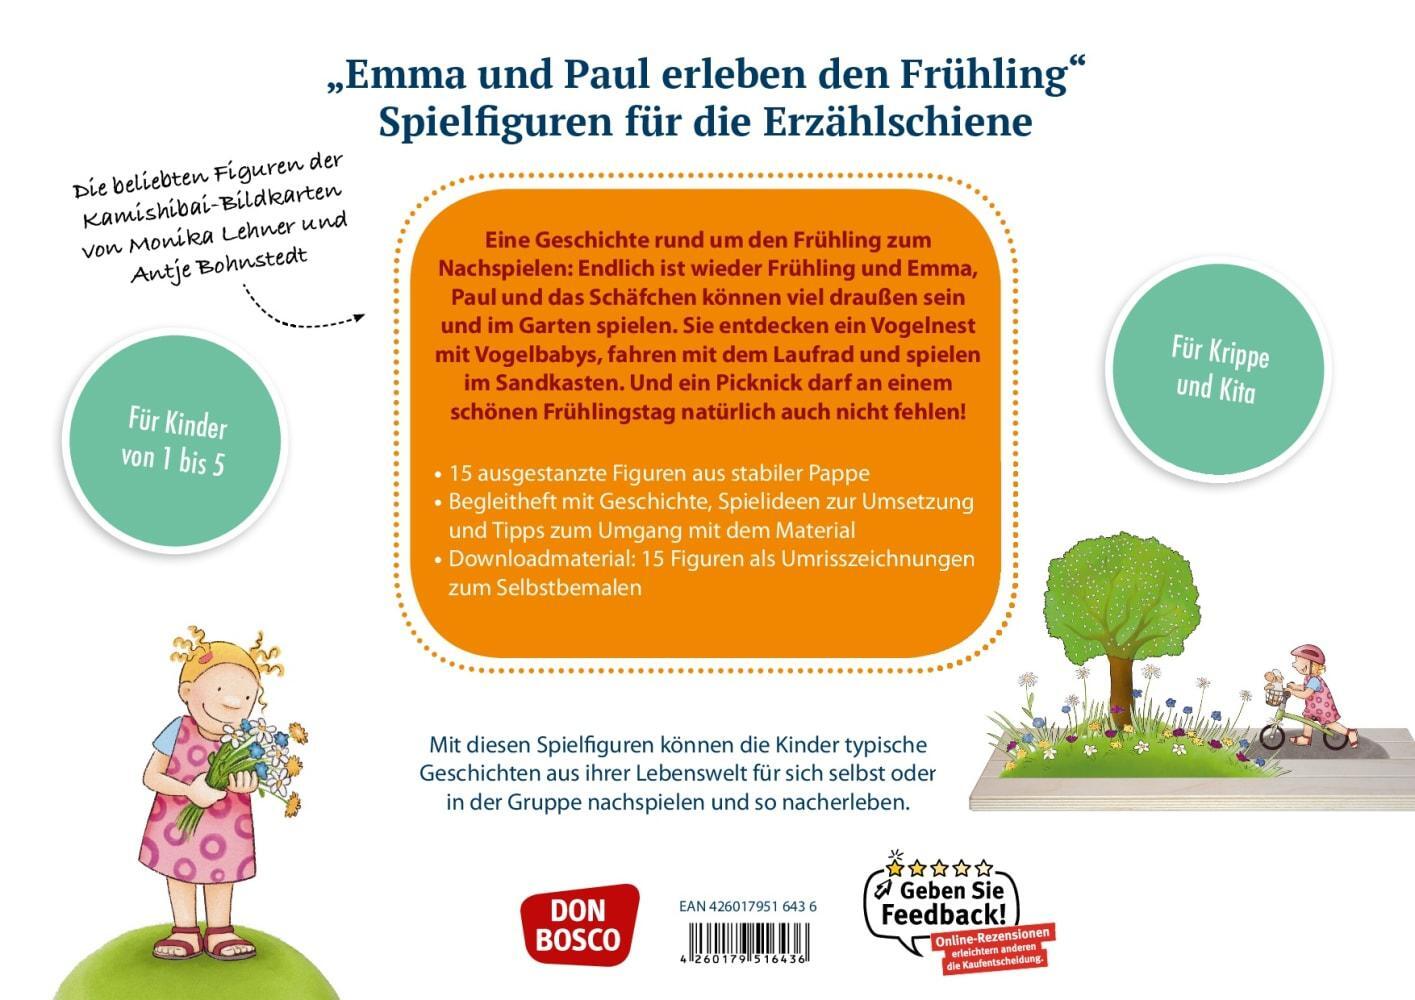 Bild: 4260179516436 | Emma und Paul erleben den Frühling | Monika Lehner | Bundle | Deutsch